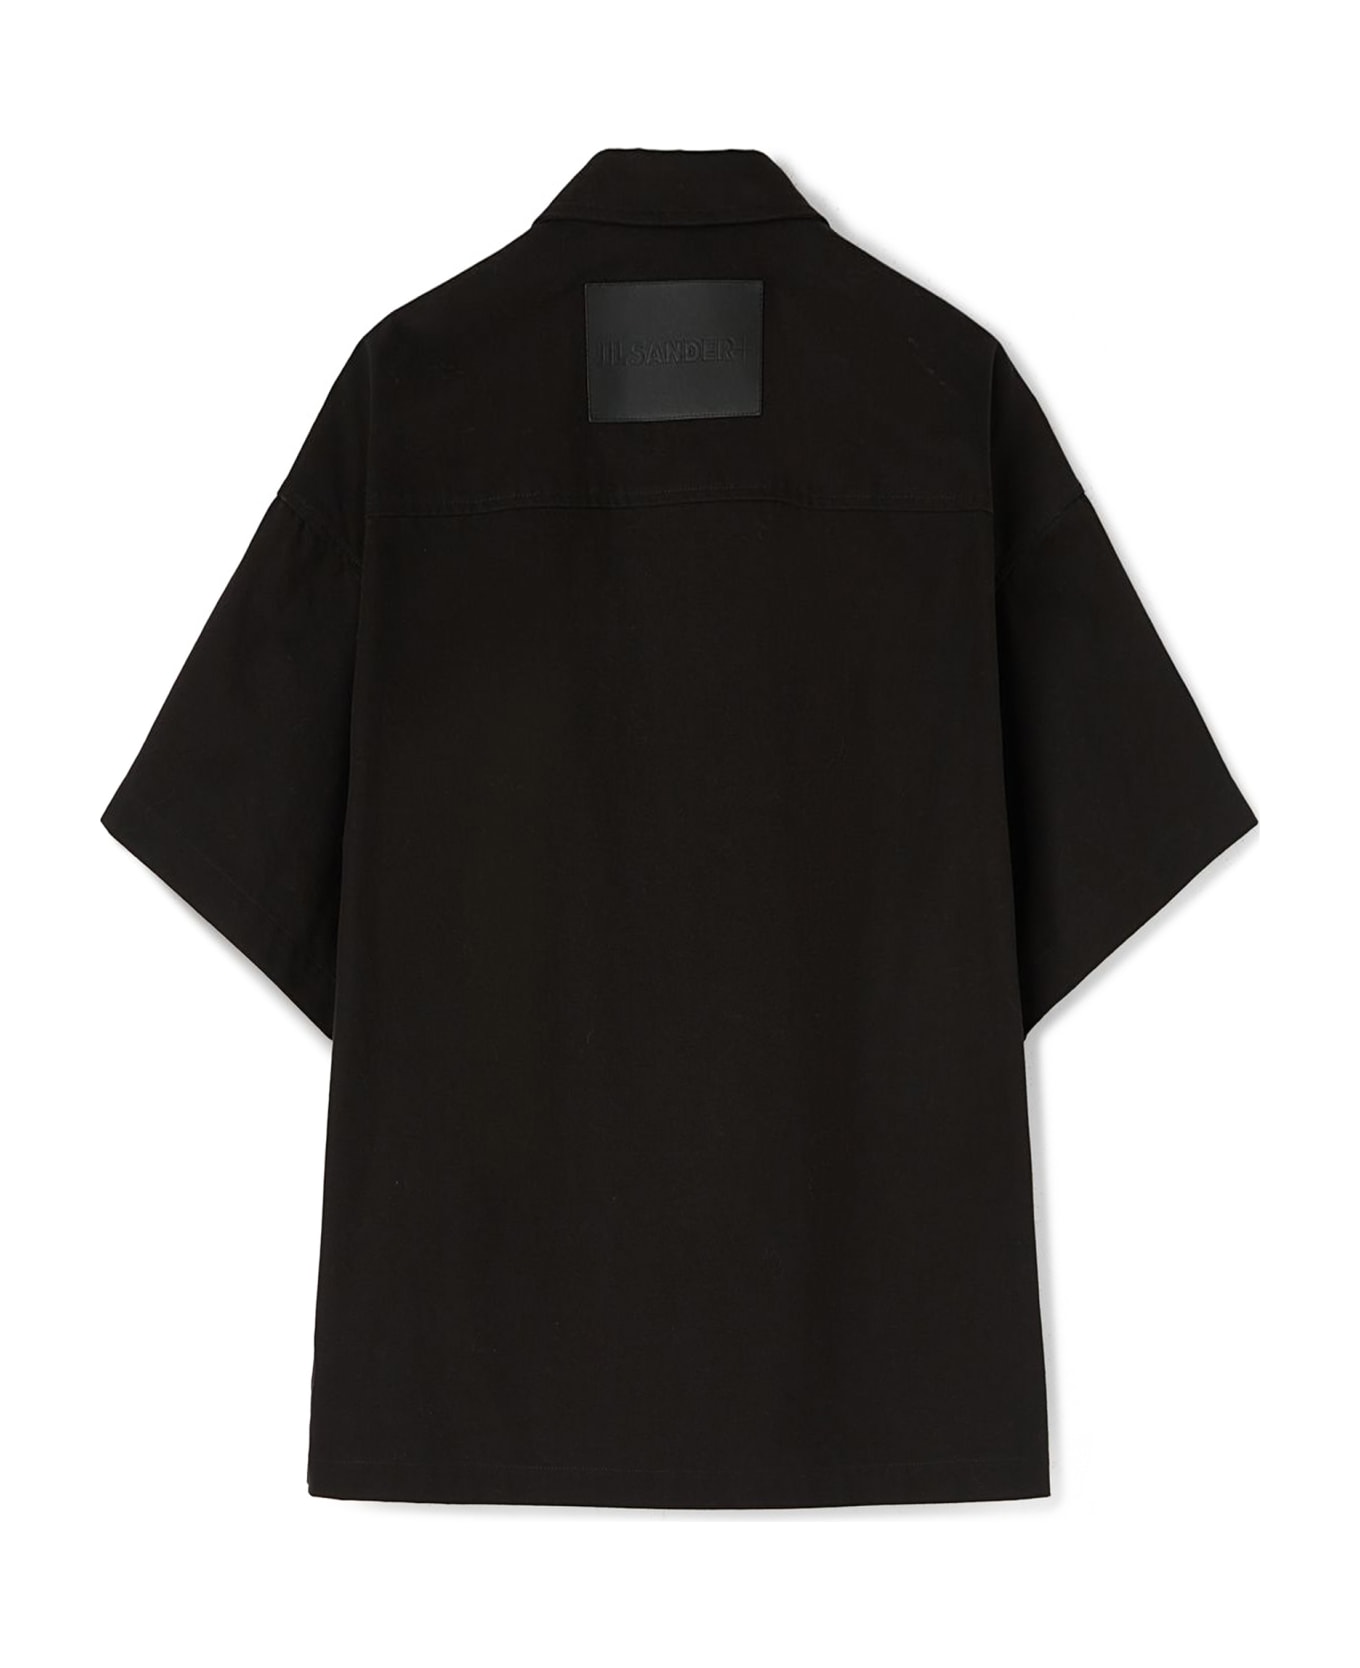 Jil Sander Black Cotton Shirt - Black シャツ